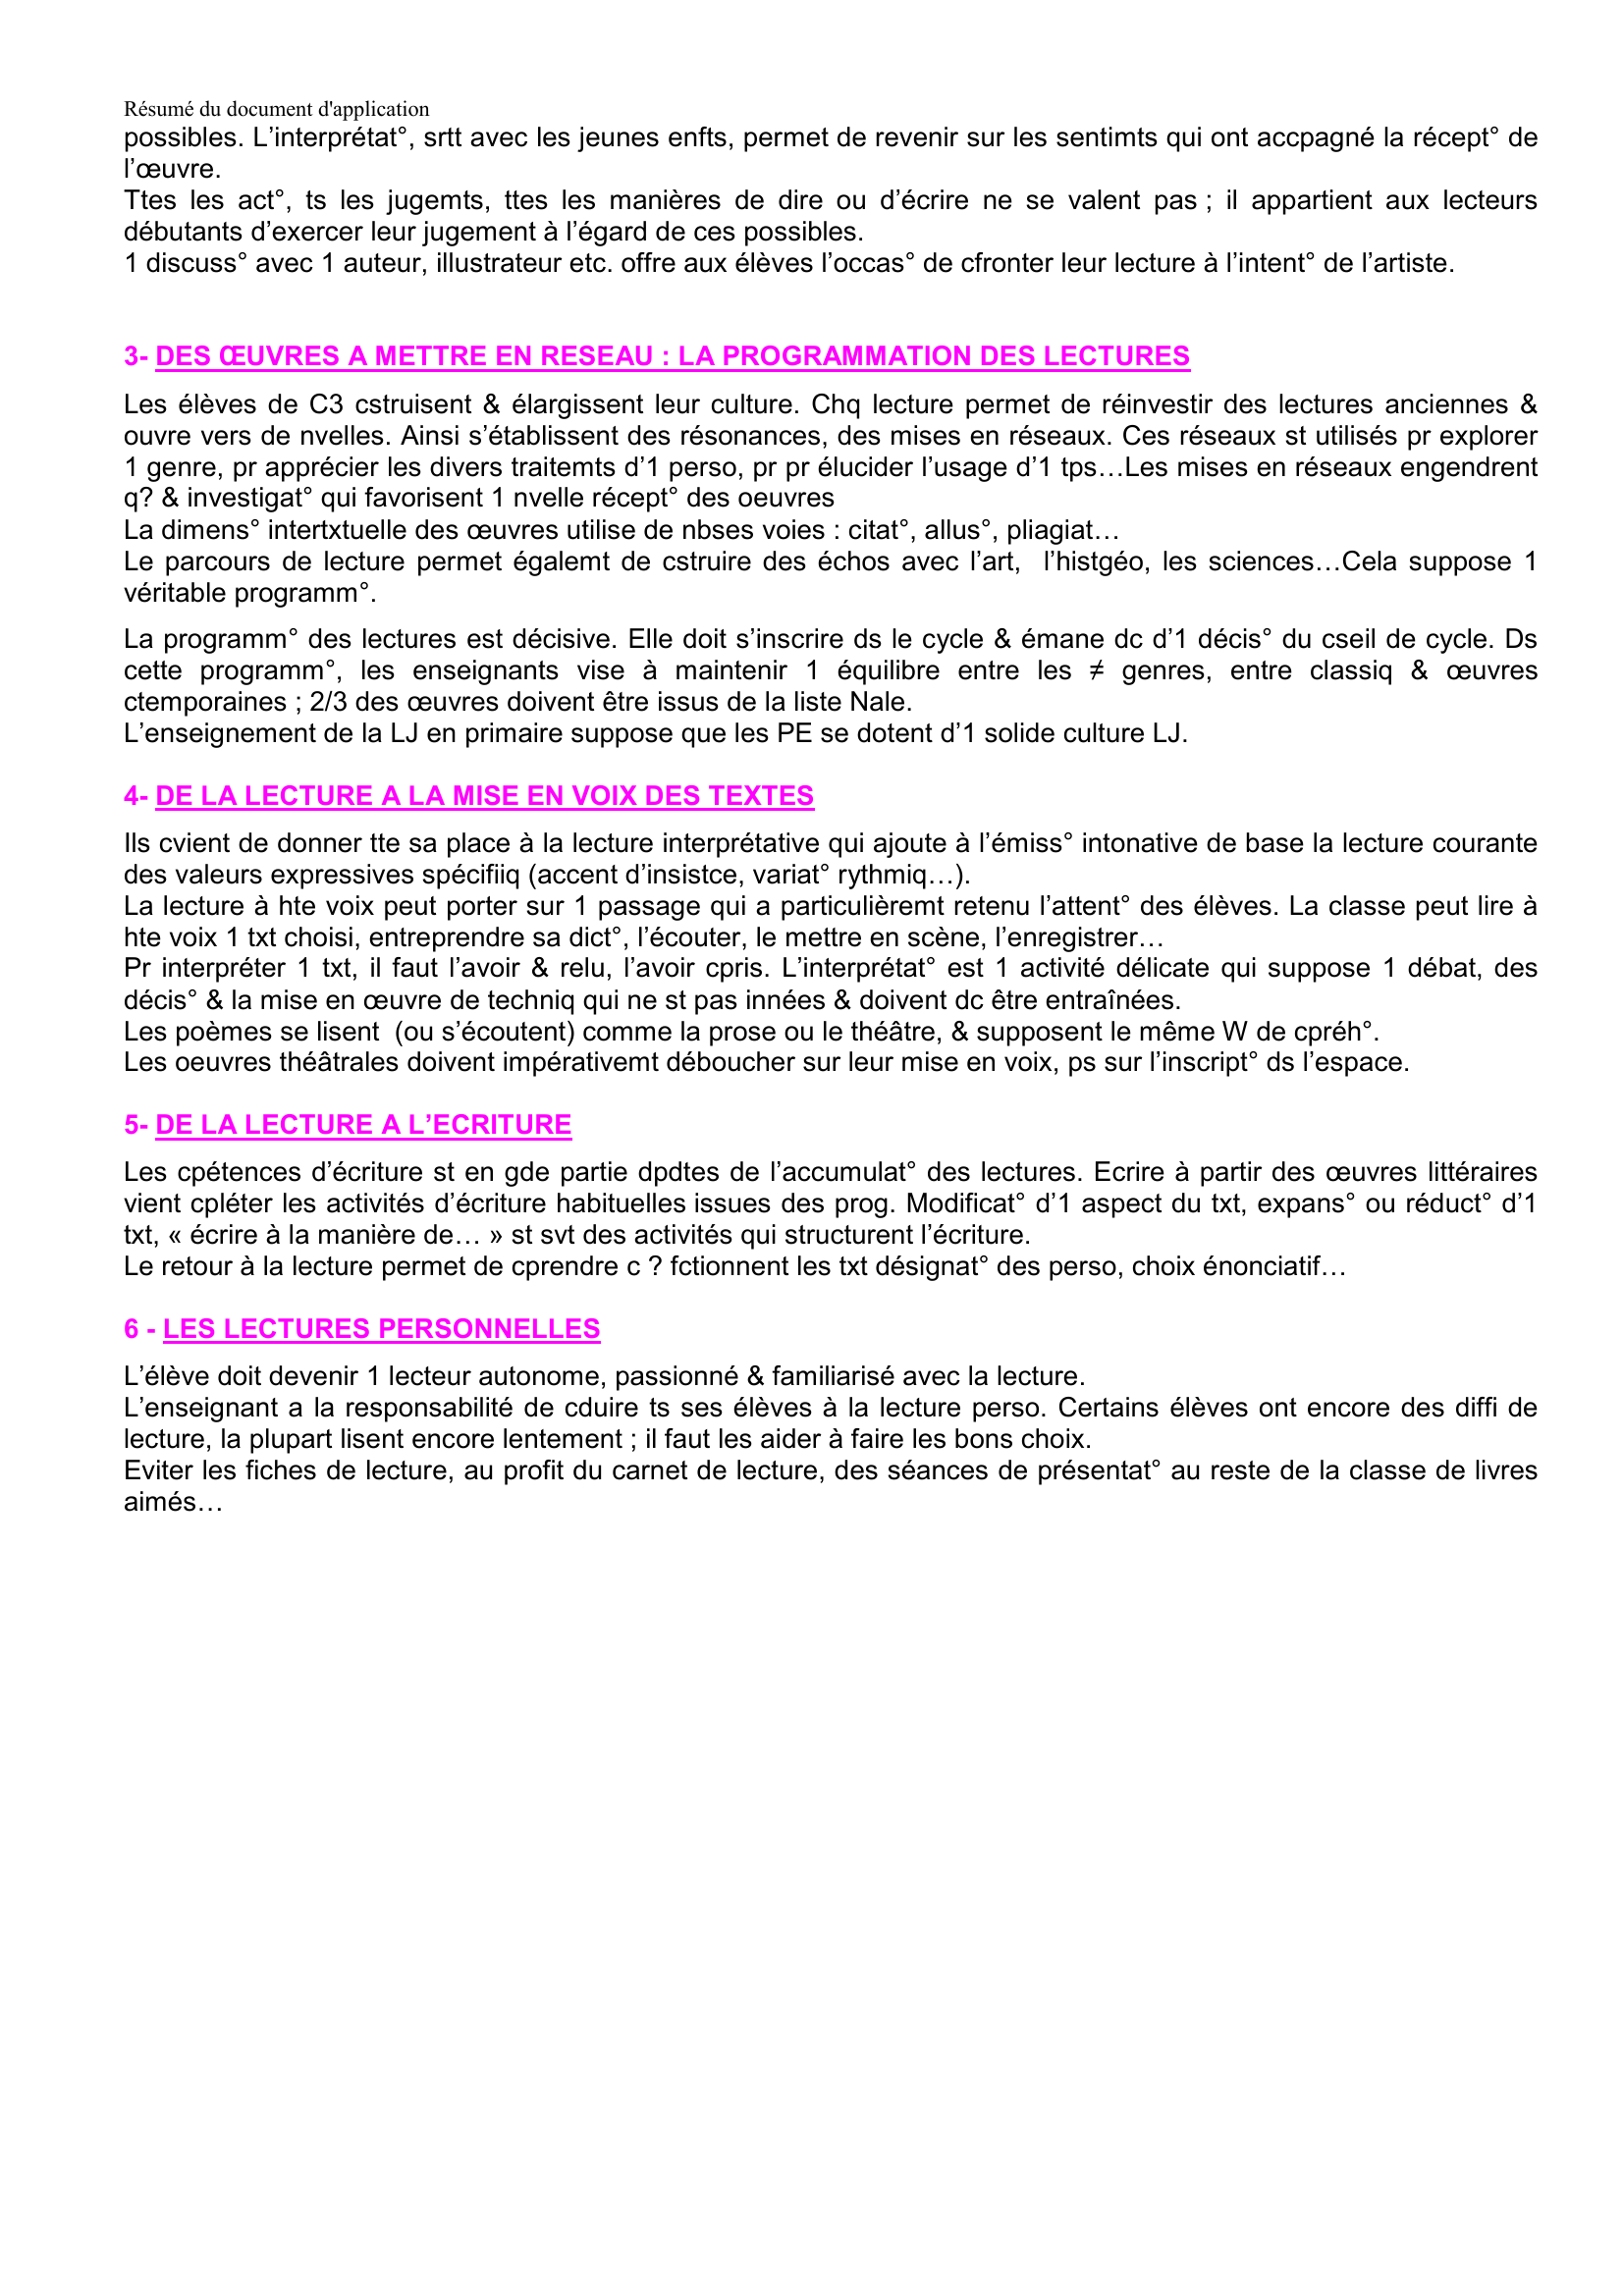 Prévisualisation du document Résumé du document d'application

DOC APPLICATION LITTERATURE AU CYCLE 3
Résumé
Fiche construite par Sylvain
Sylvain.